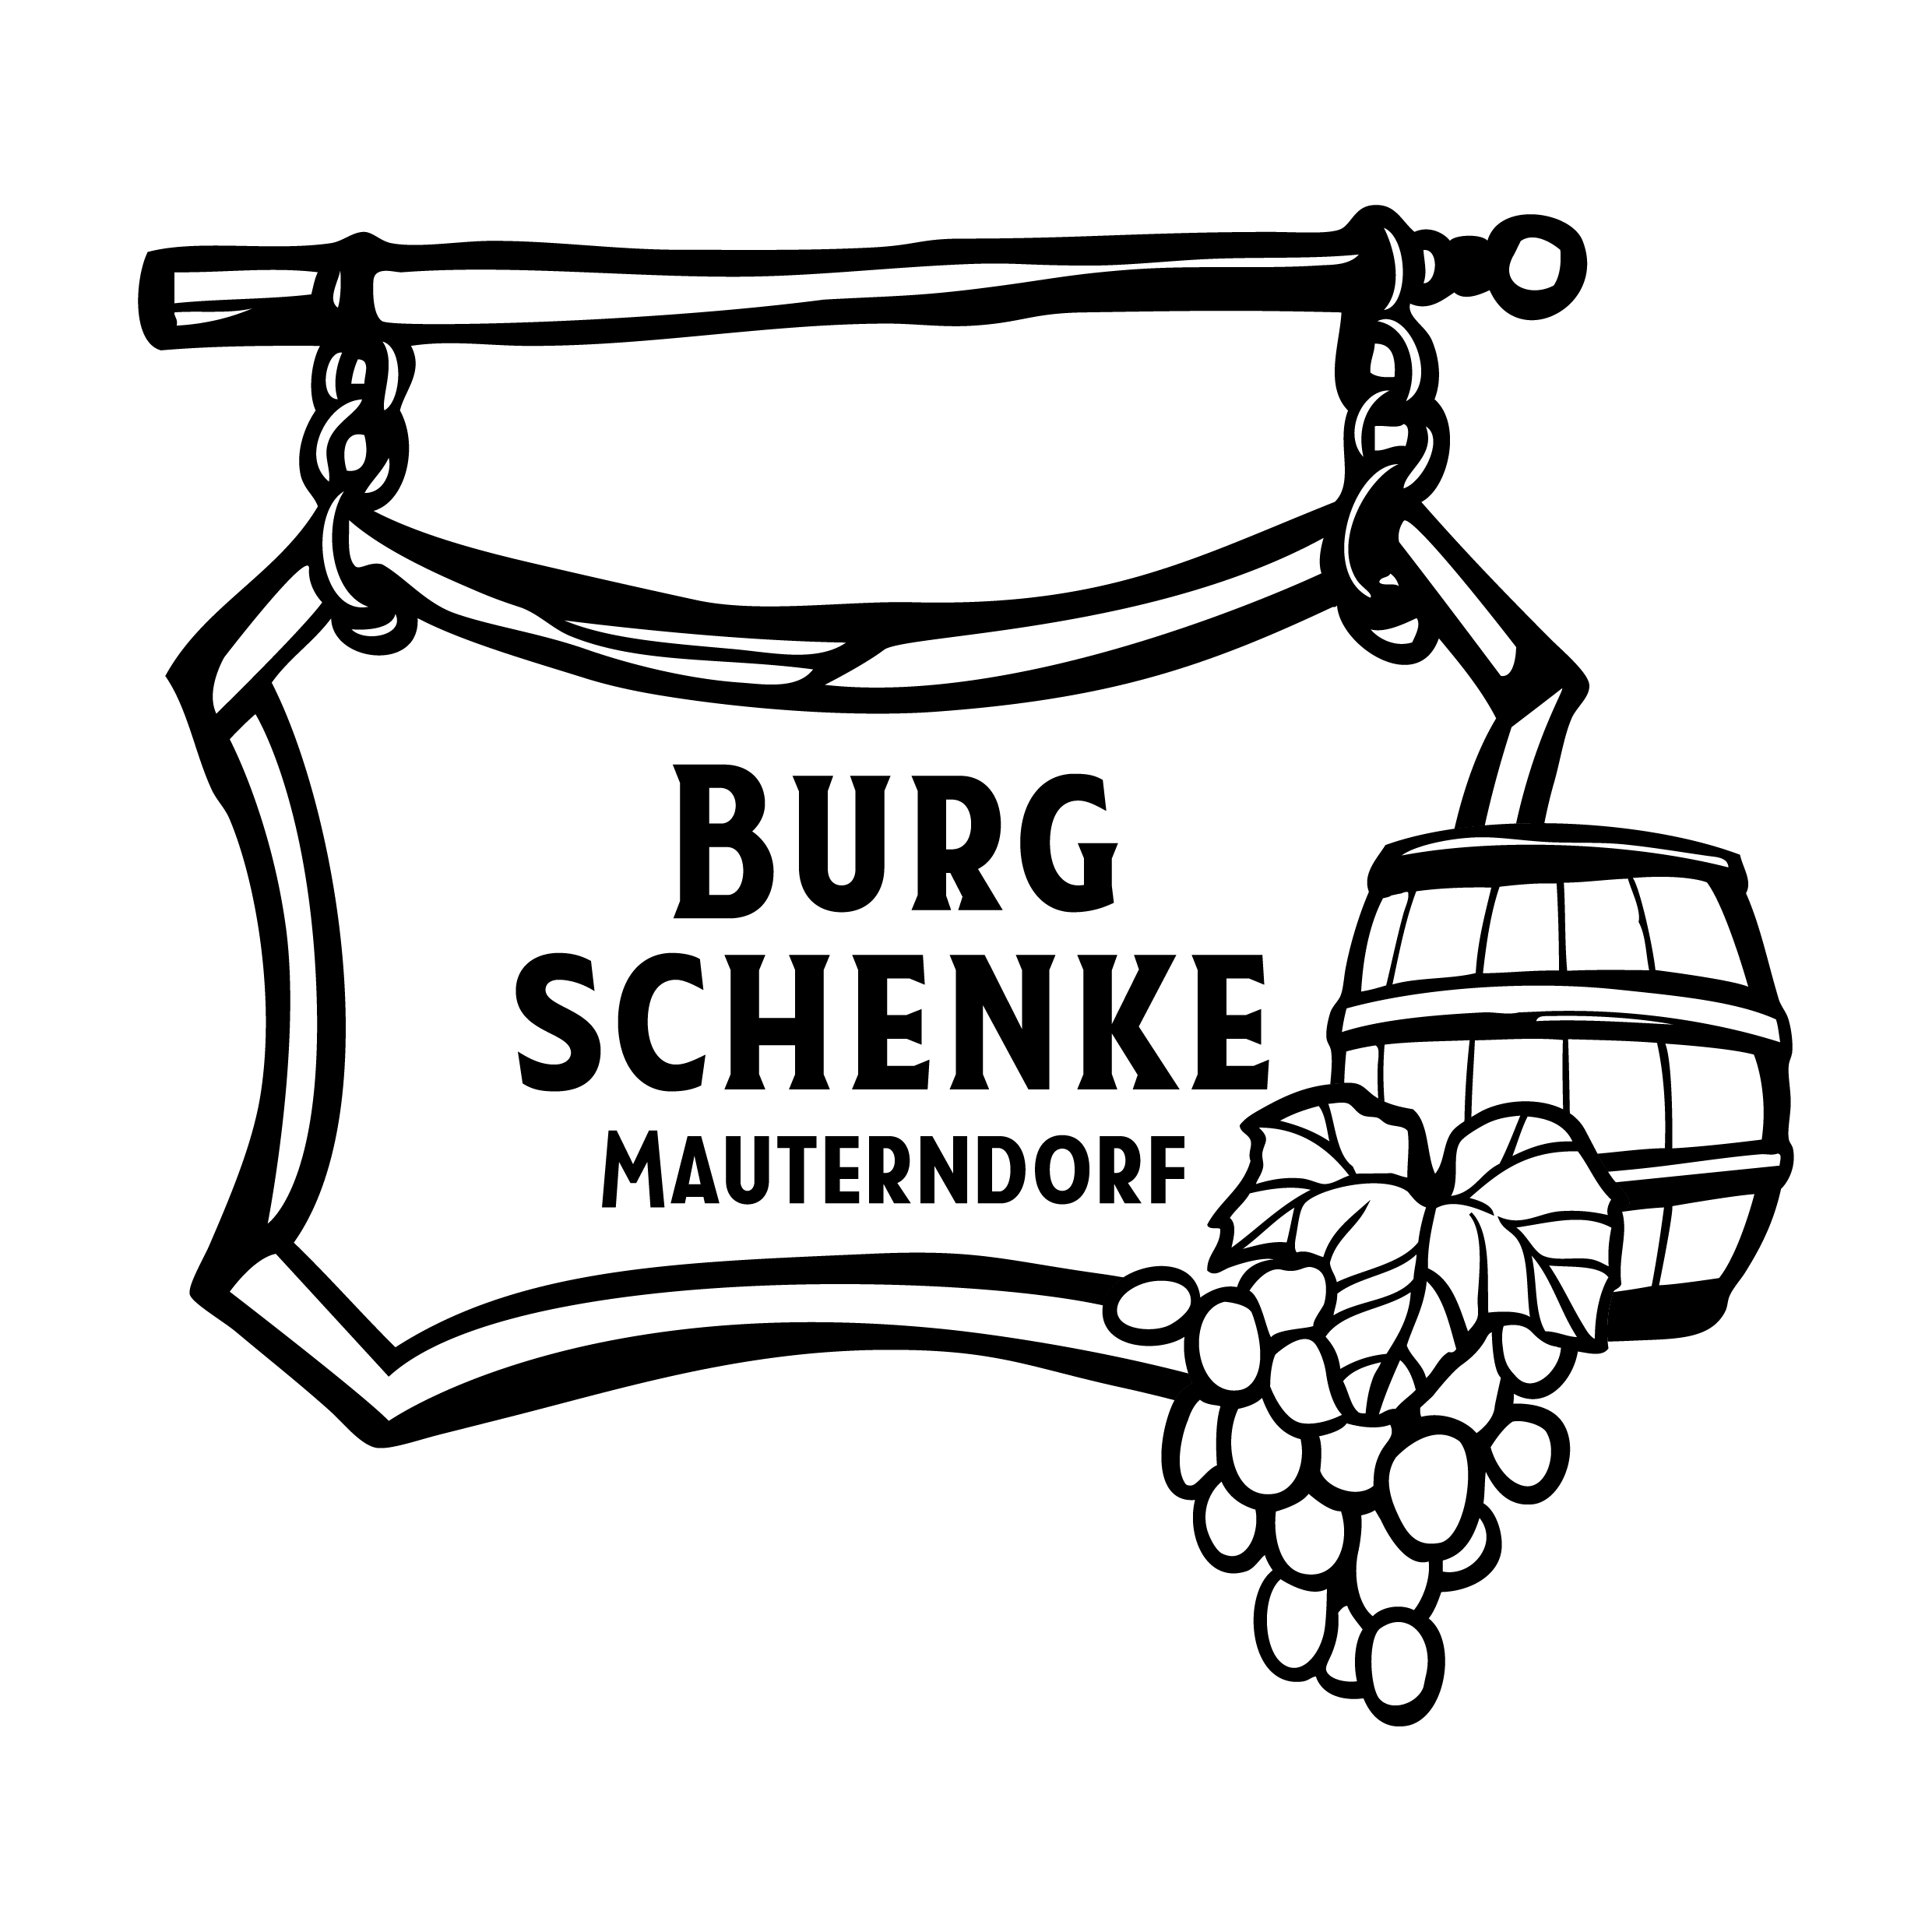 Burgschenke Mauterndorf - Logo ohne Farben - Transparent